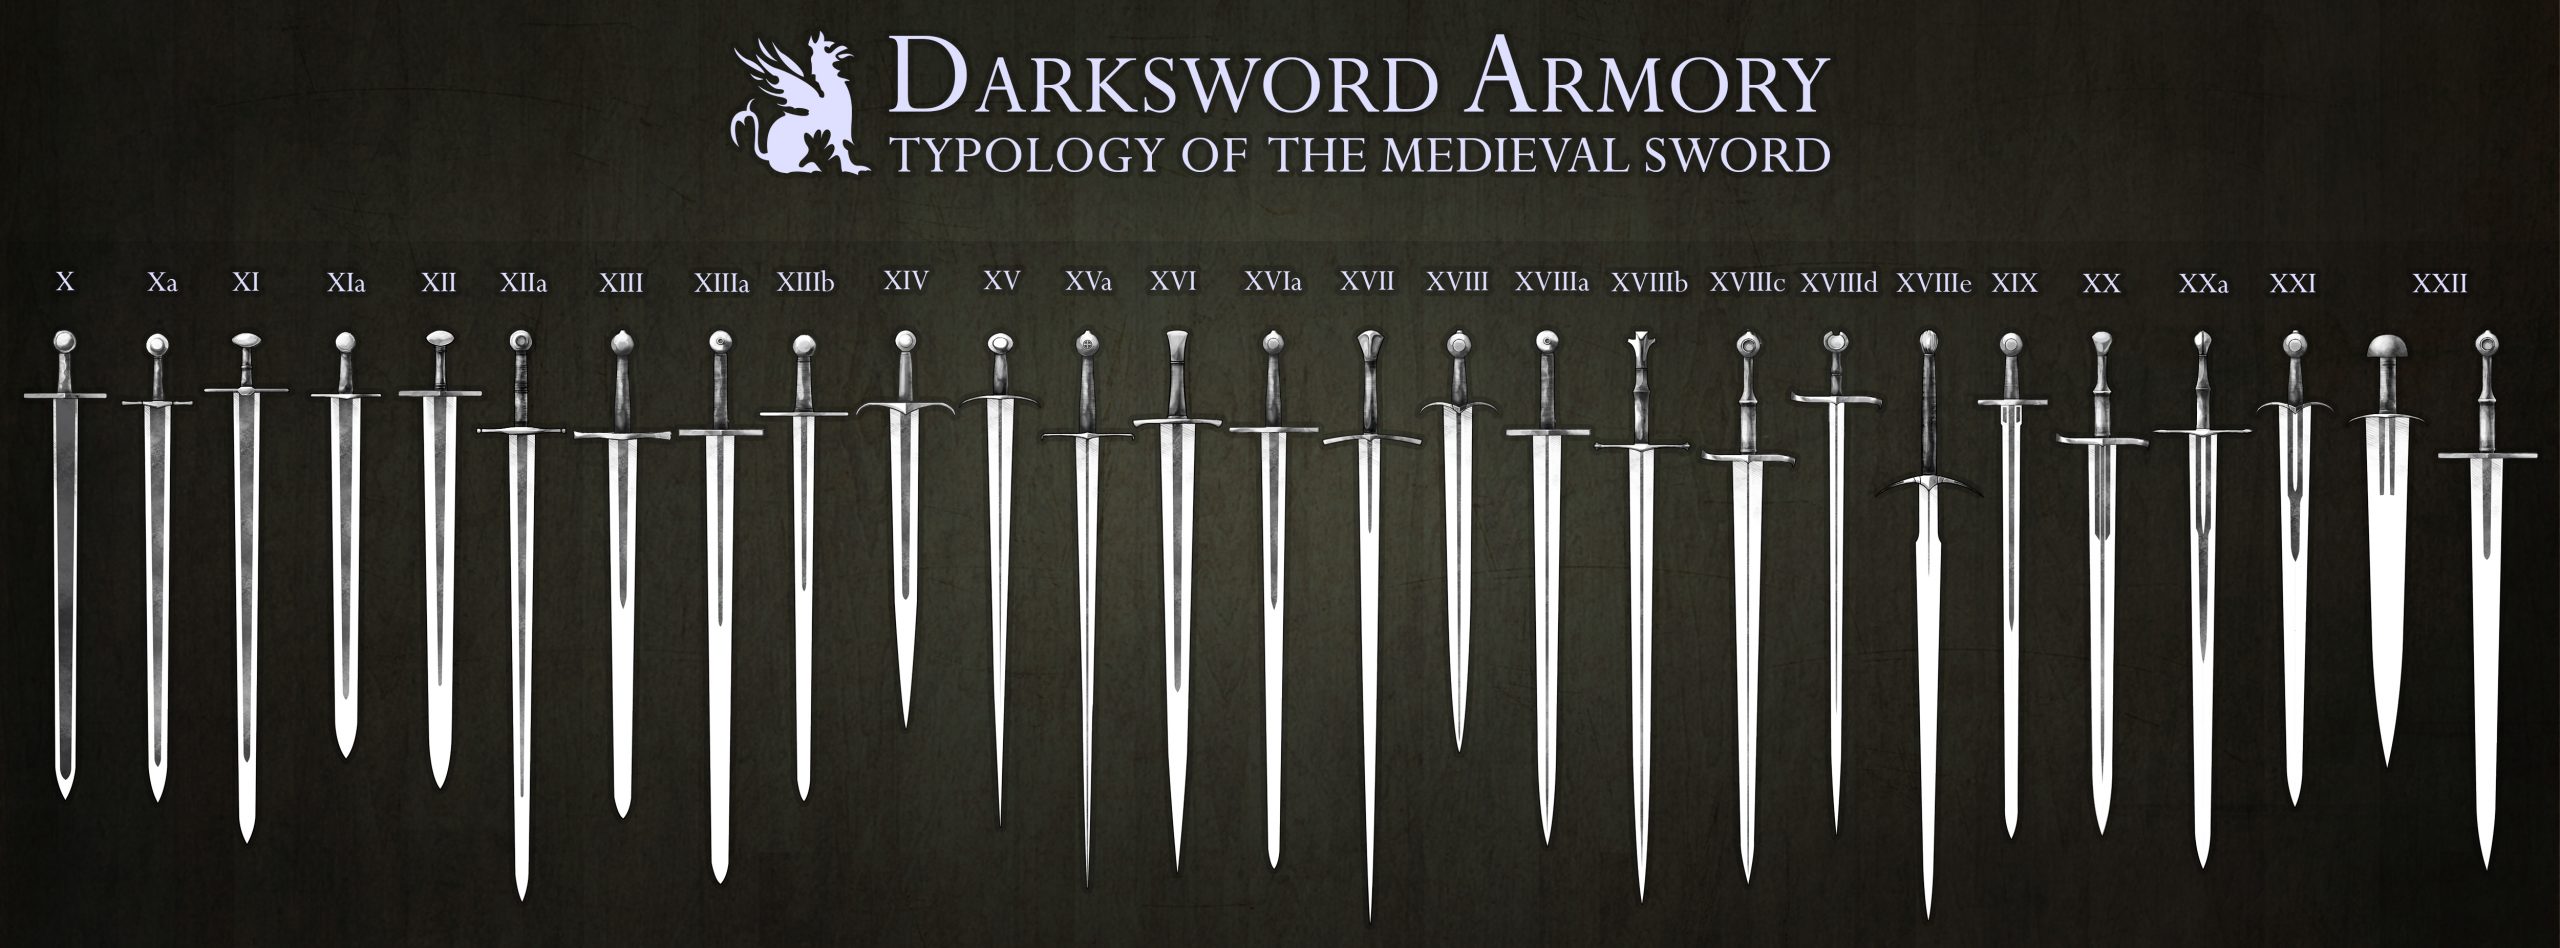 Henry V Sword - Oakeshott Type XVIII – Arms & Armor